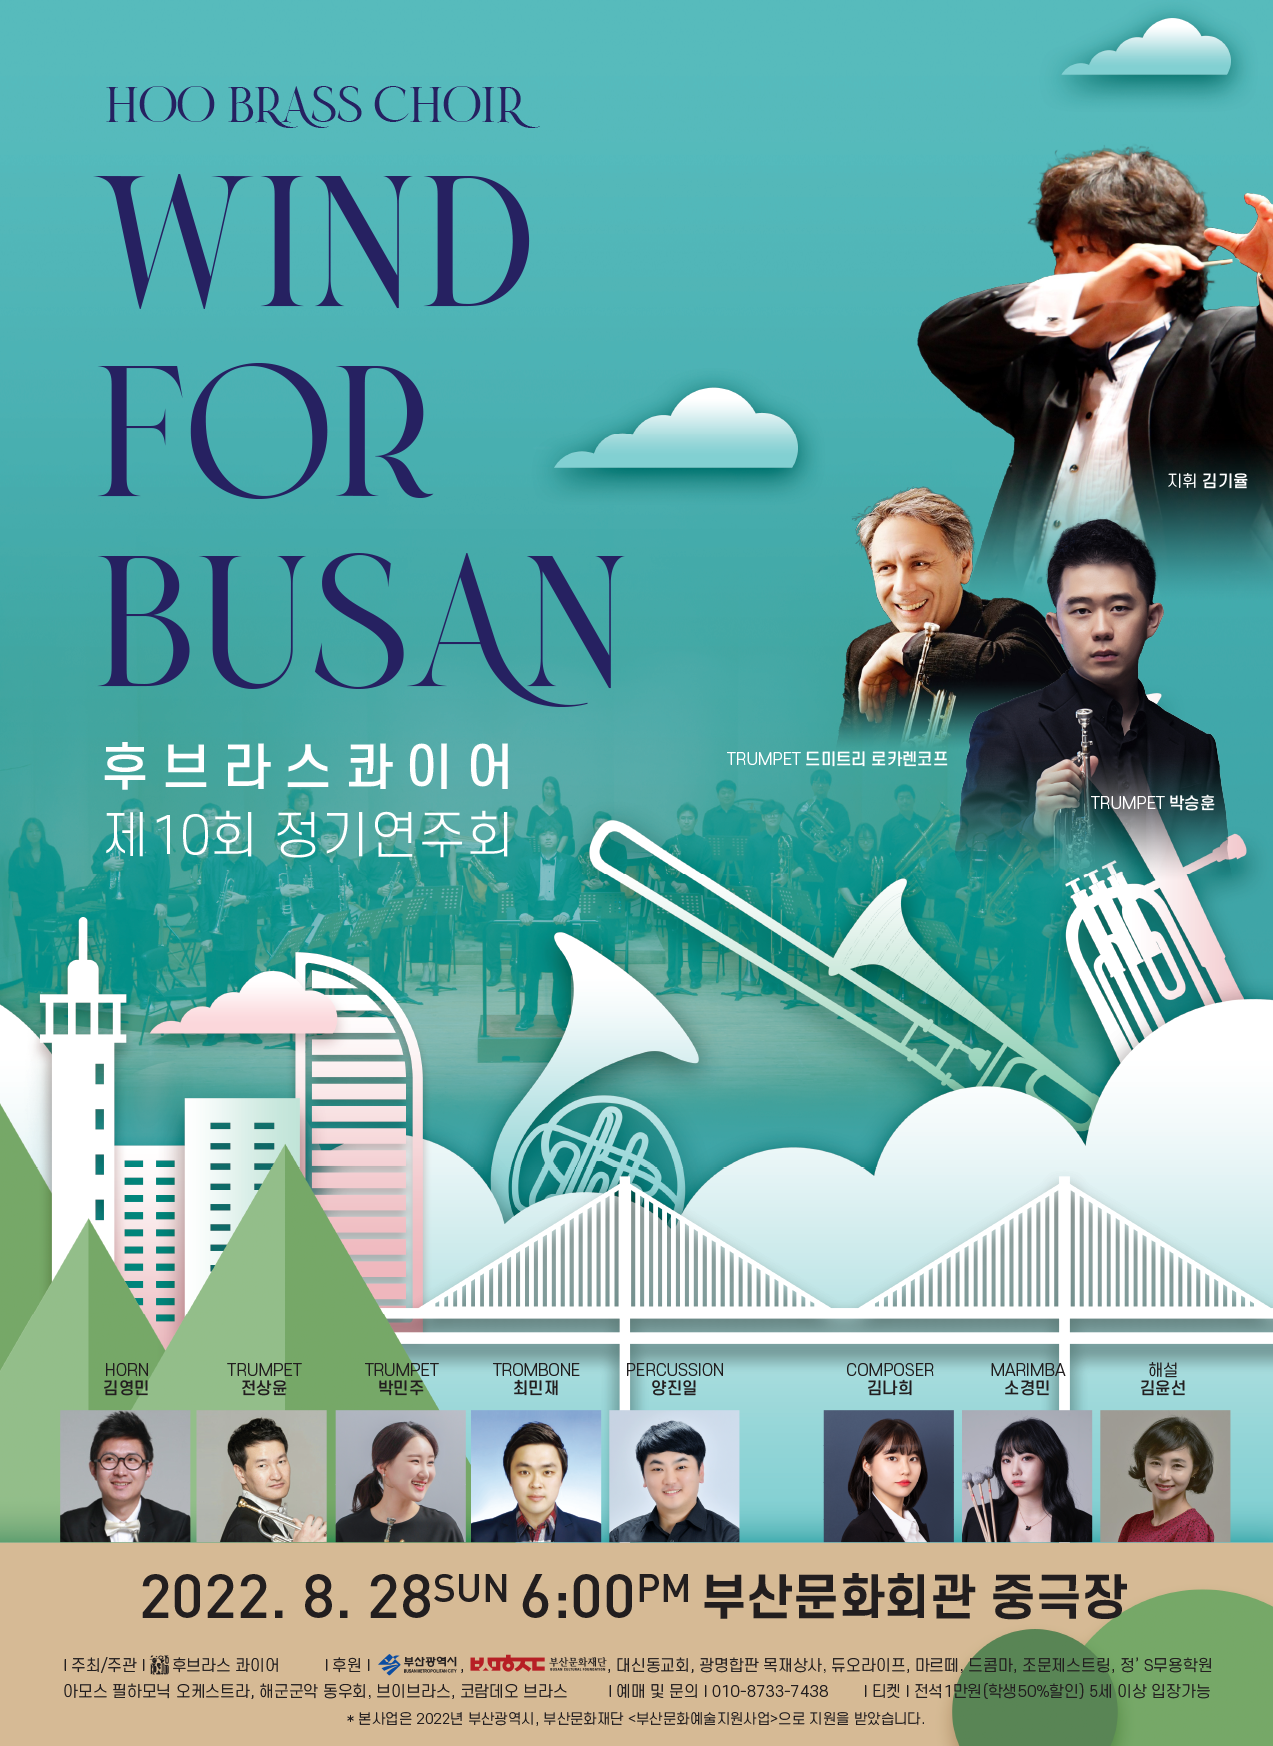 제10회 후브라스콰이어 기념 정기연주회 'WIND for BUSAN'